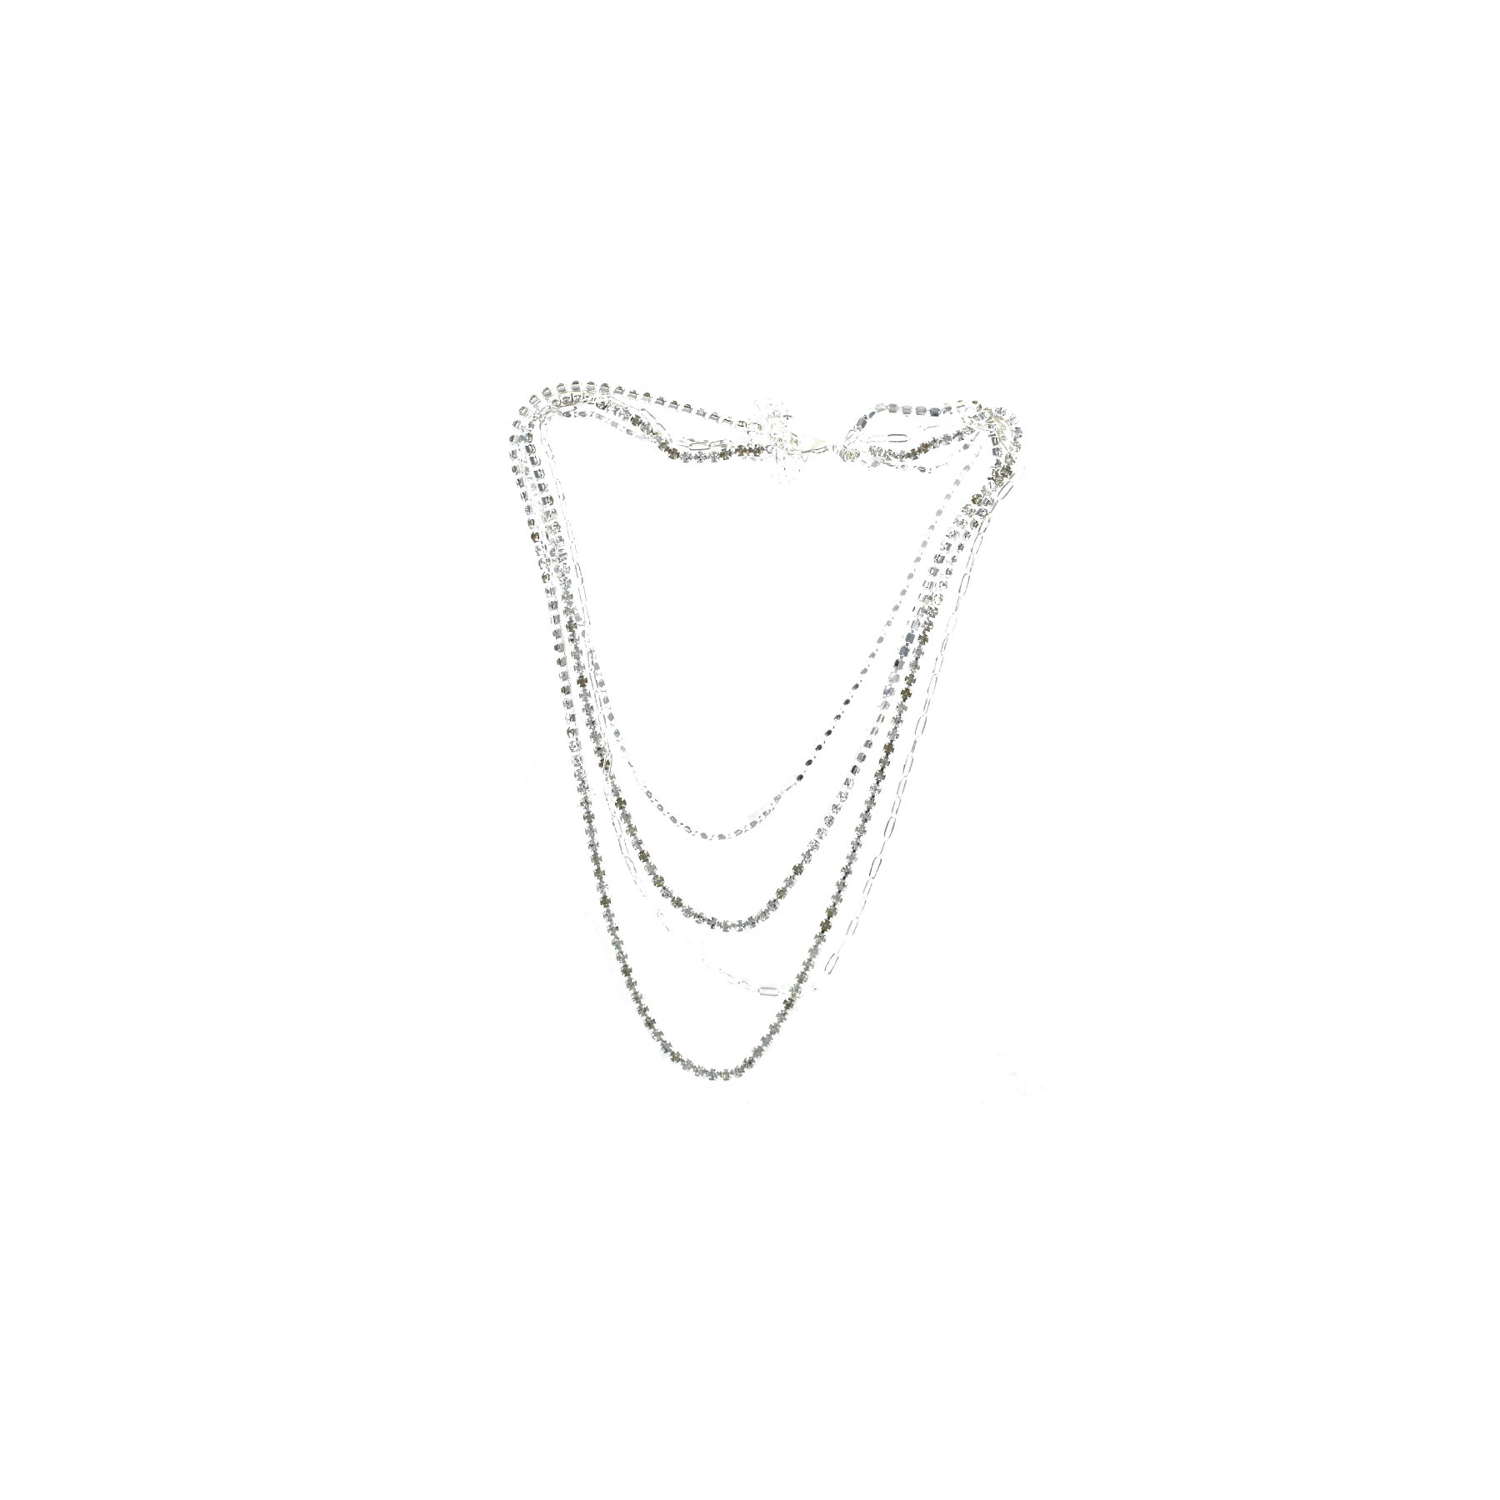 Diamante encrusted multi chain silver tone necklace.